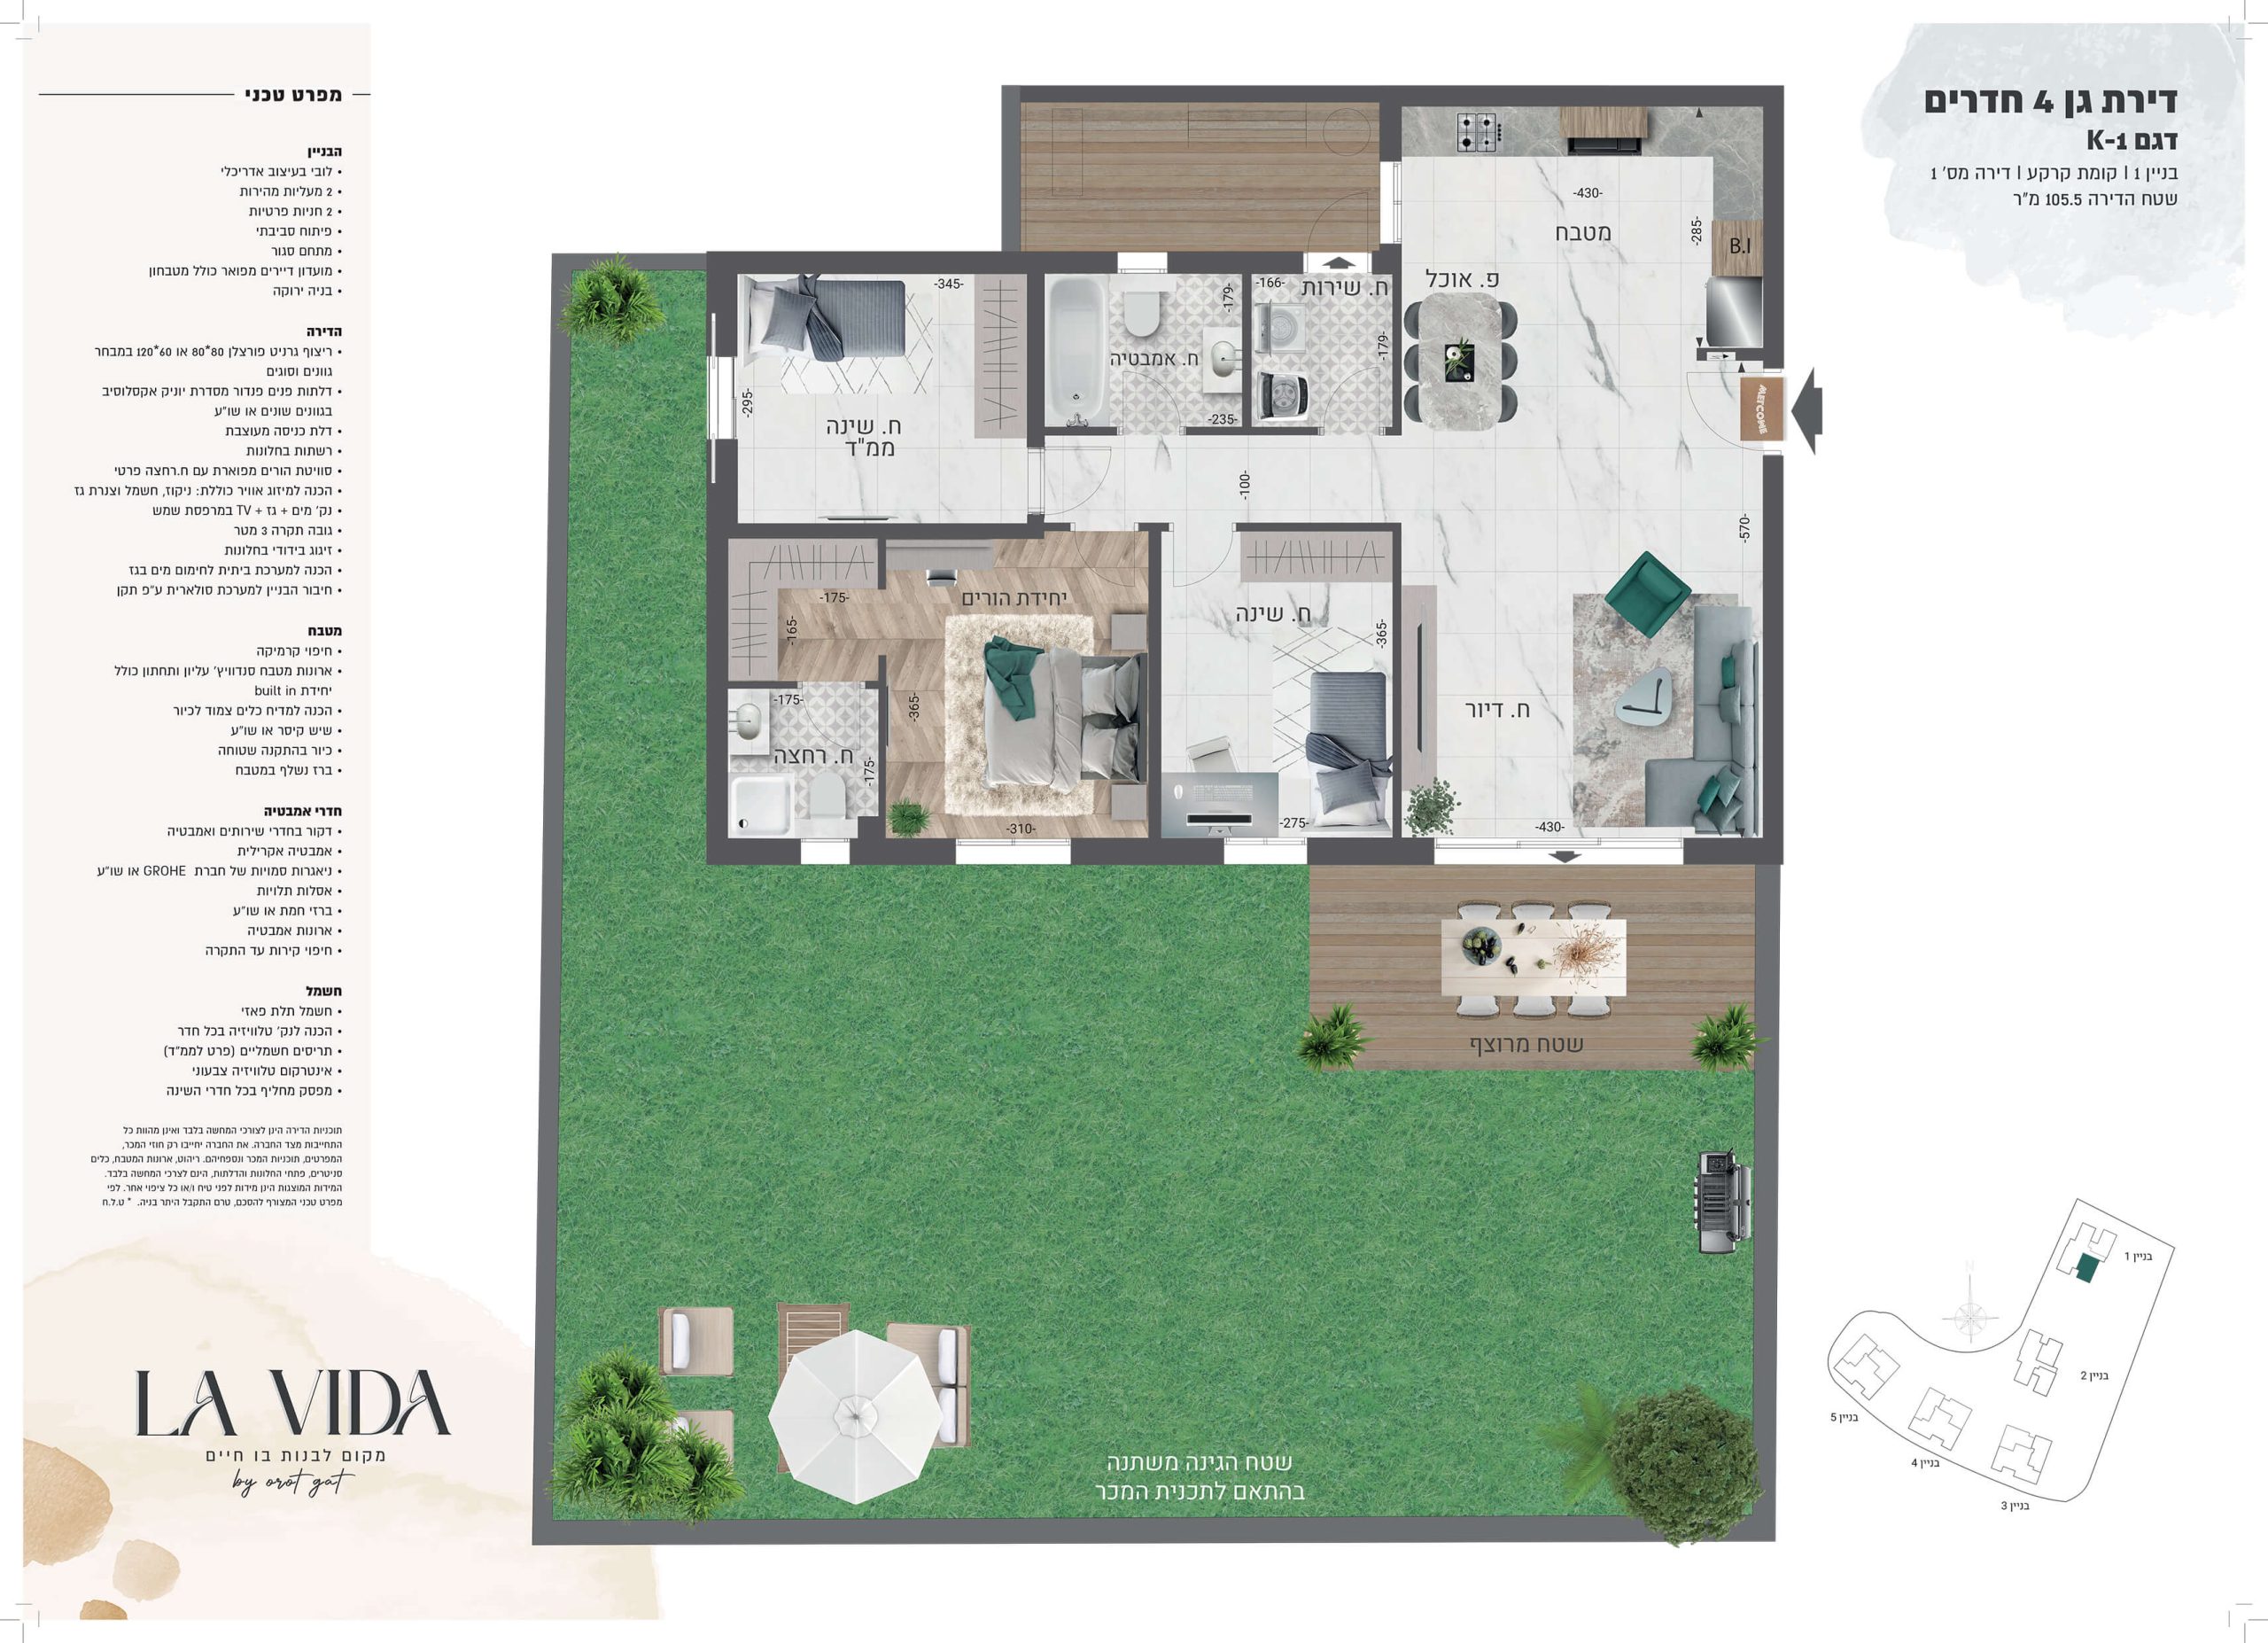 תוכנית דירה 4 חדרים דגם K1 פרויקט מגורים LA VIDA בניינים 1-2